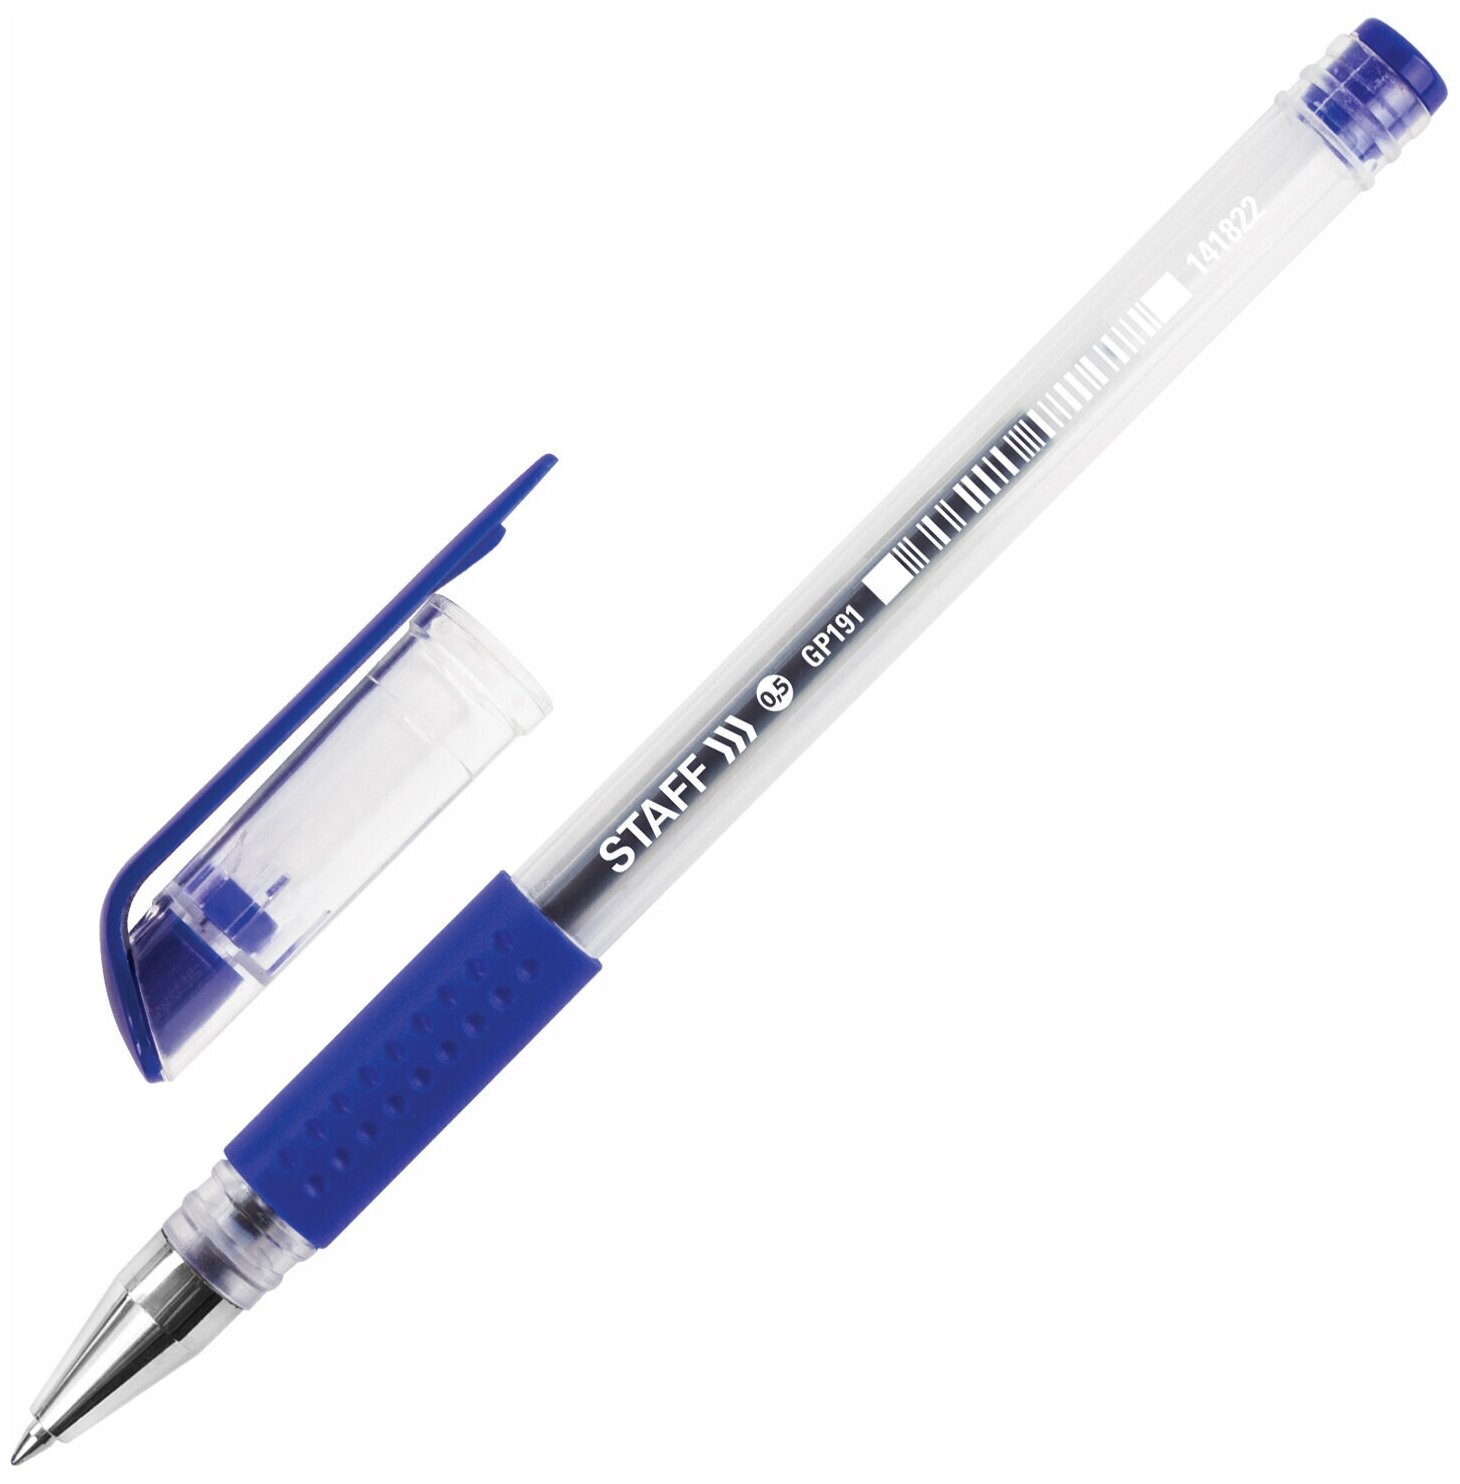 Ручка гелевая Staff Everyday GP-191 с грипом синяя пишущий узел 0.5мм линия 0.35мм - фото №1